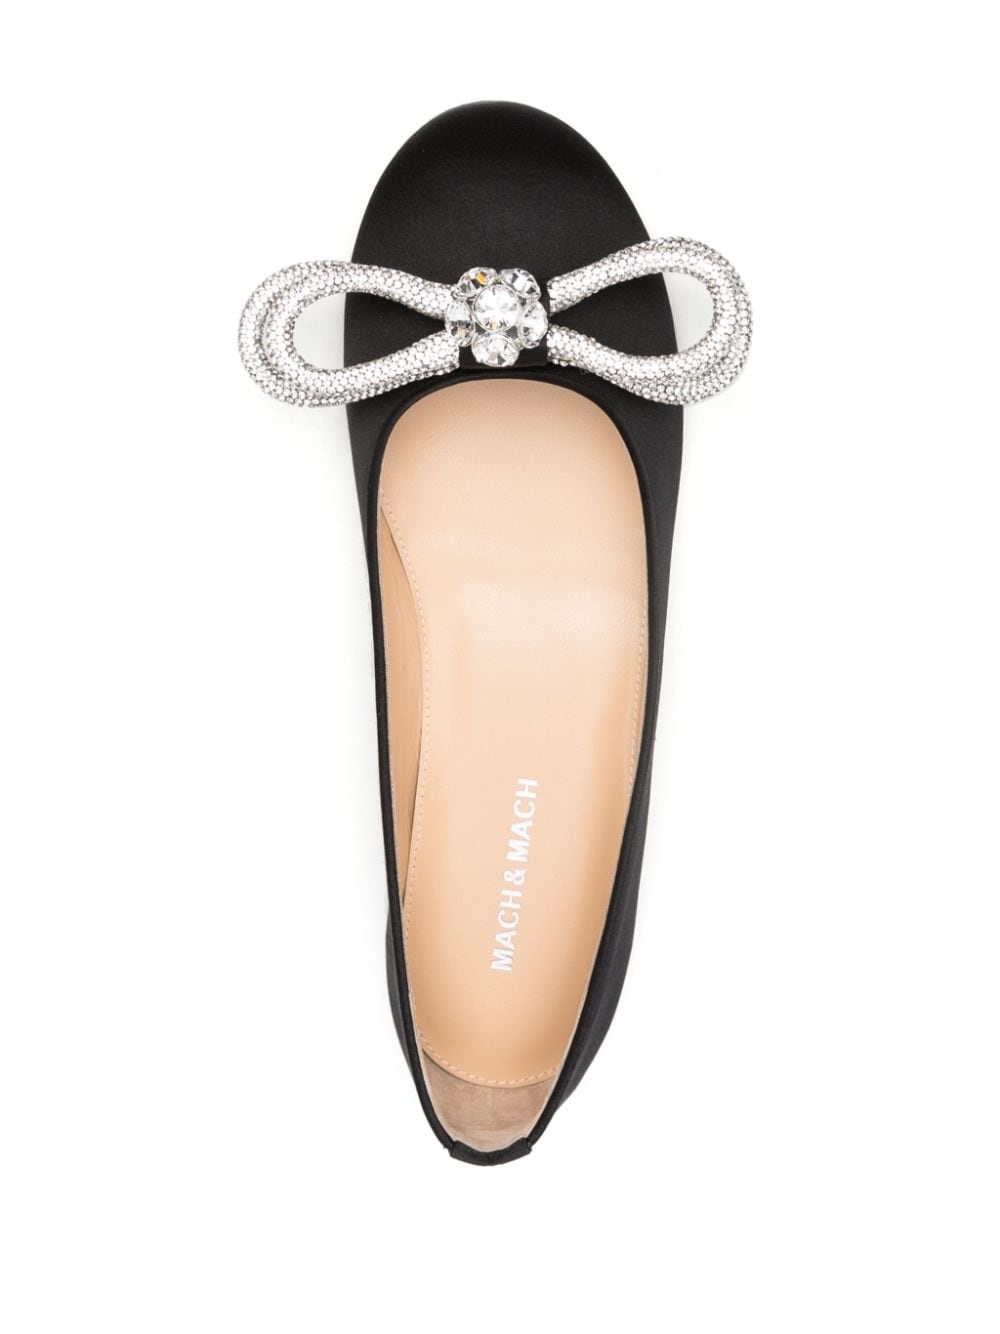 Double Bow satin ballerina shoes - 4